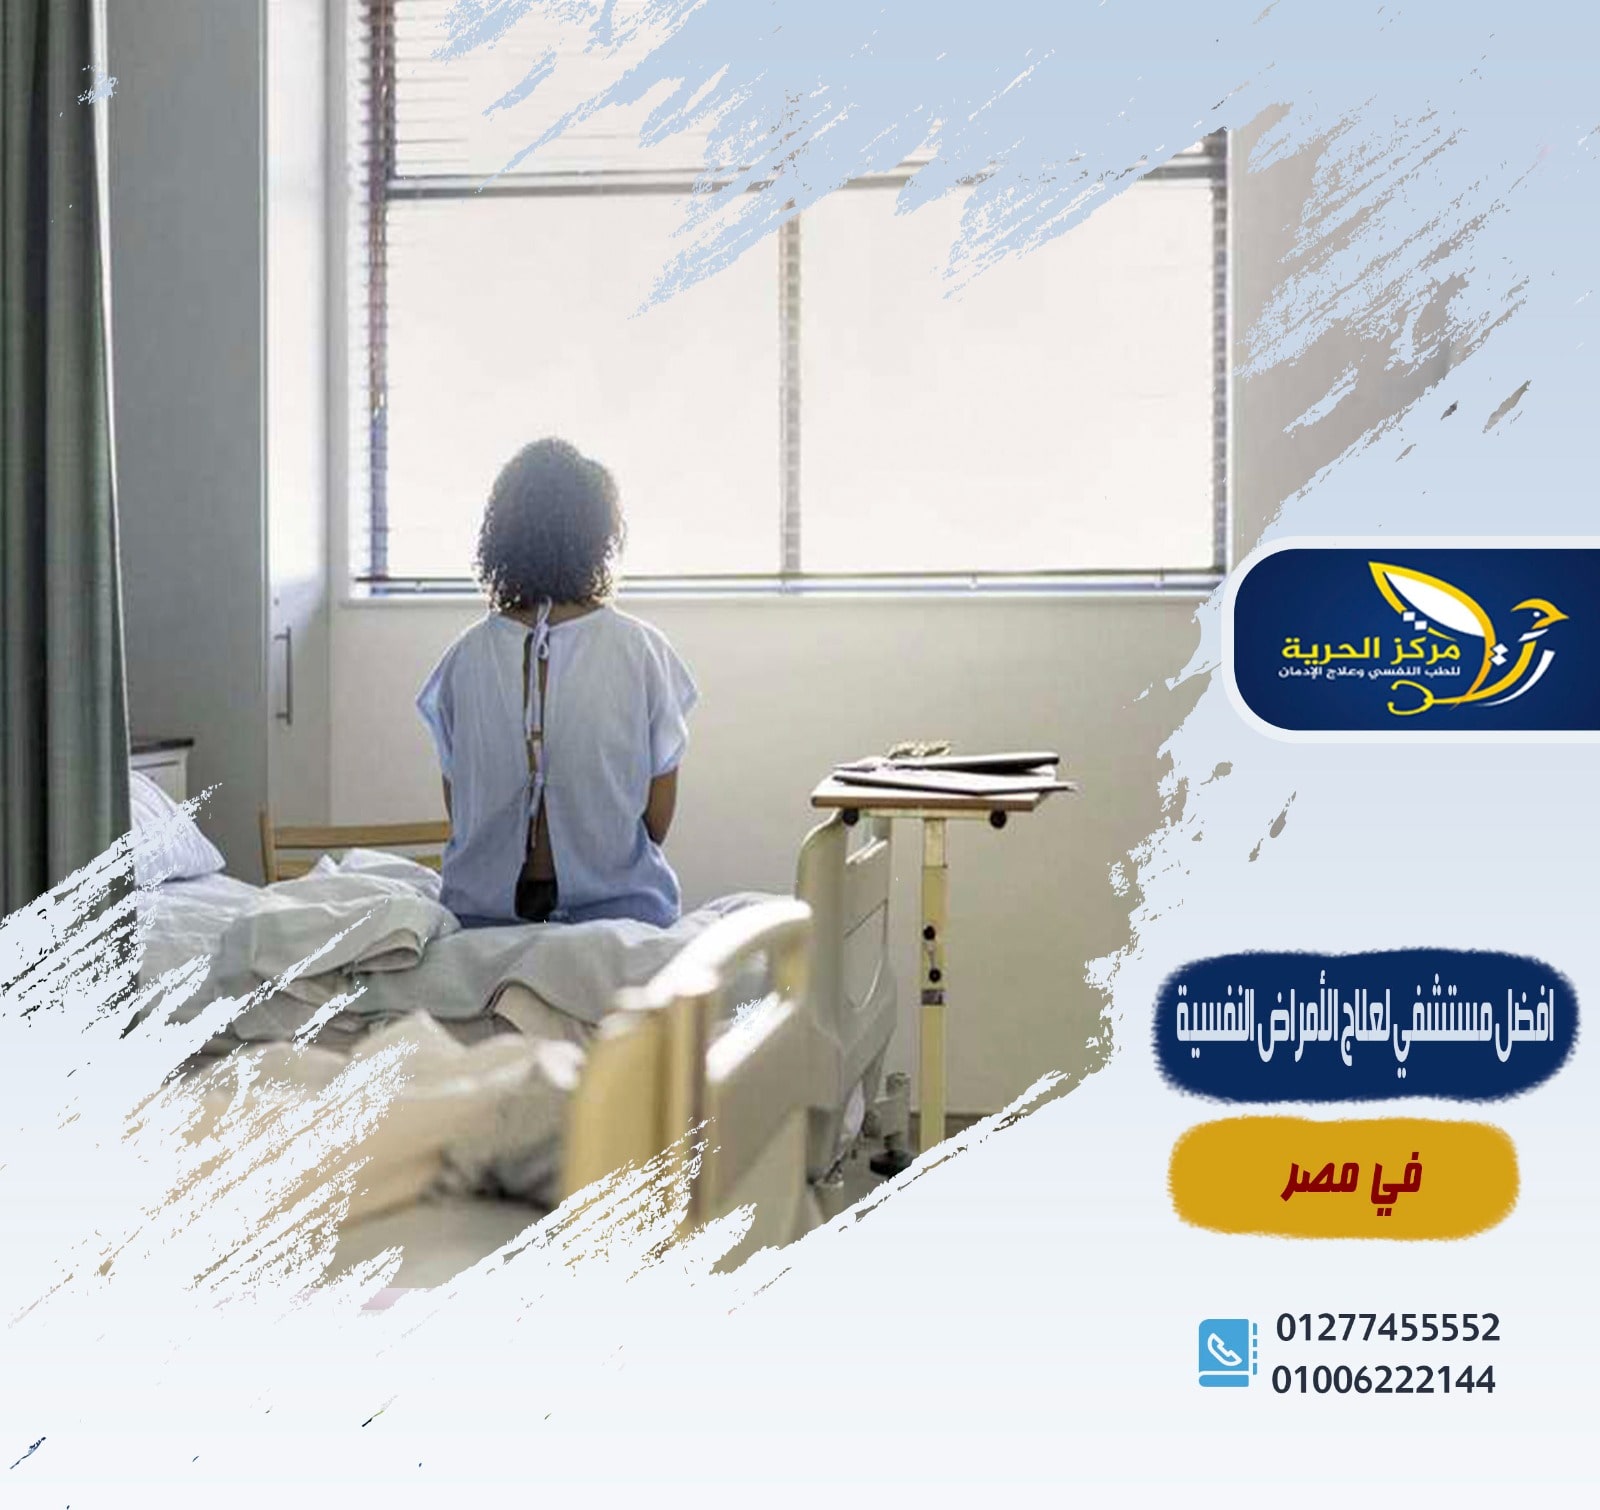 أفضل مستشفى لعلاج الأمراض النفسية في مصر